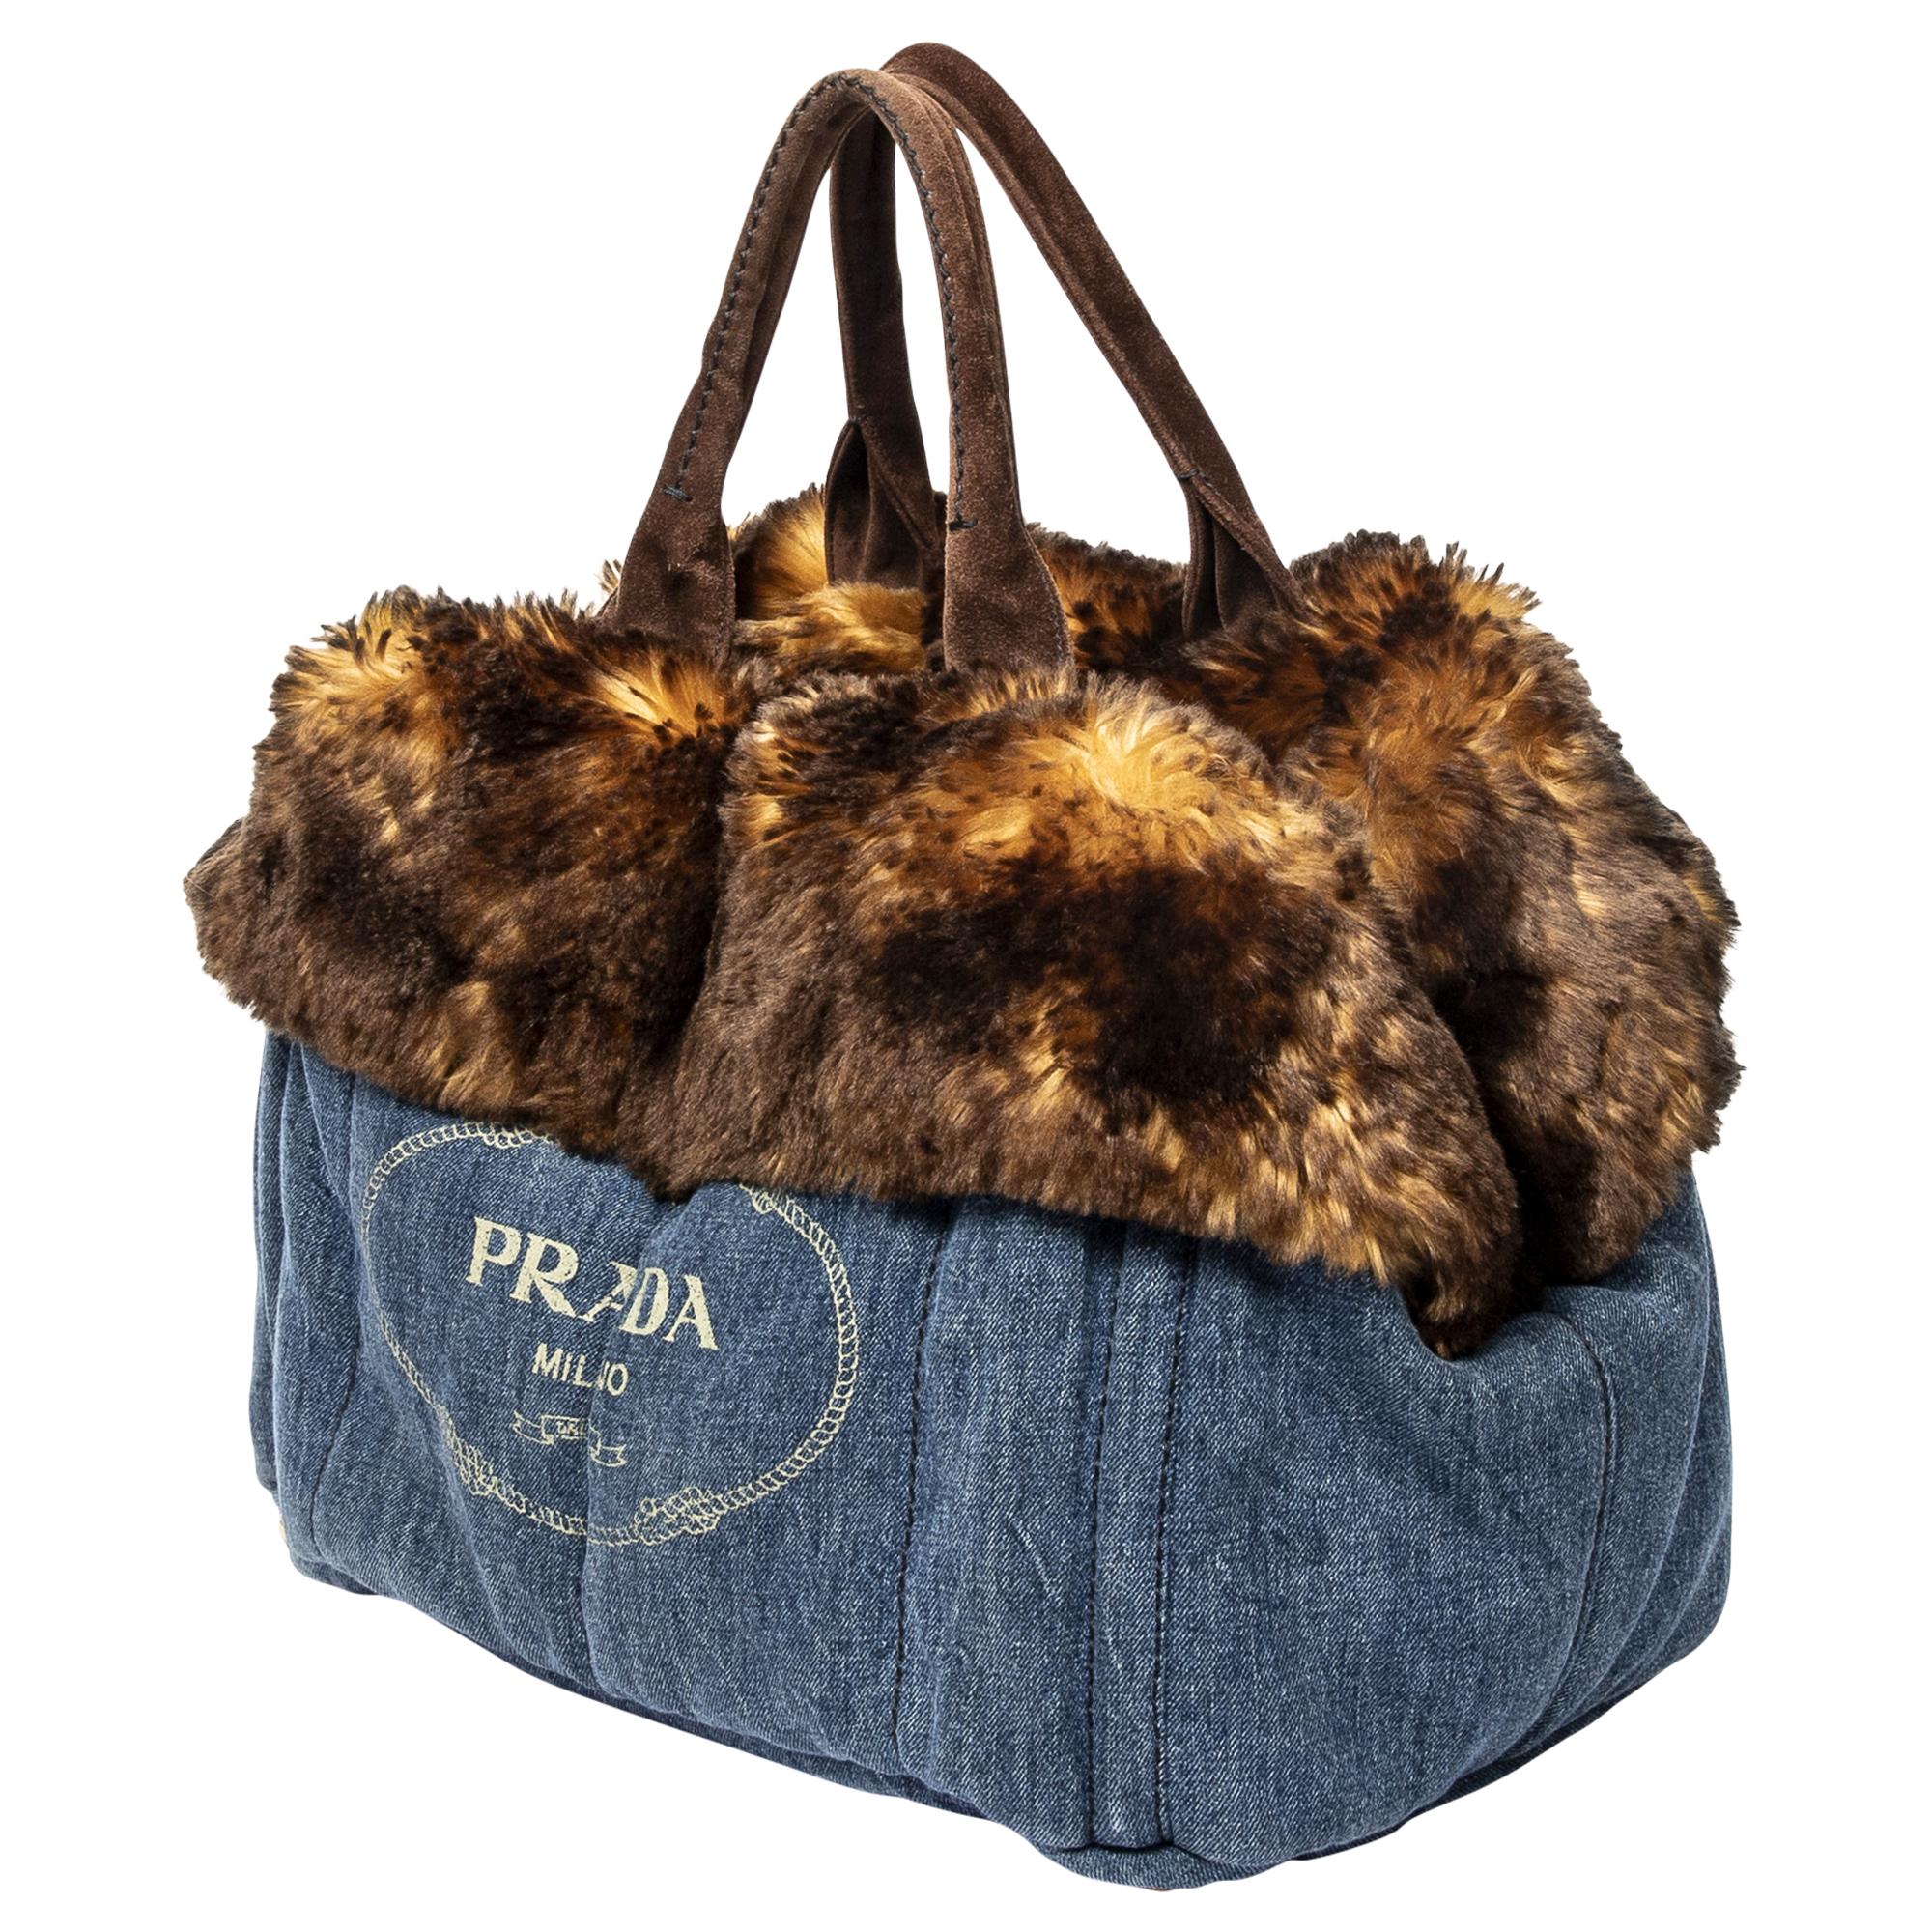 Faites-vous remarquer avec le fourre-tout Prada Limited Edition Large Denim Fur Canapa. Confectionné en denim résistant dans une teinte bleu foncé profonde, il s'agit d'un accessoire polyvalent et luxueux. Orné de ferrures dorées et doté d'un